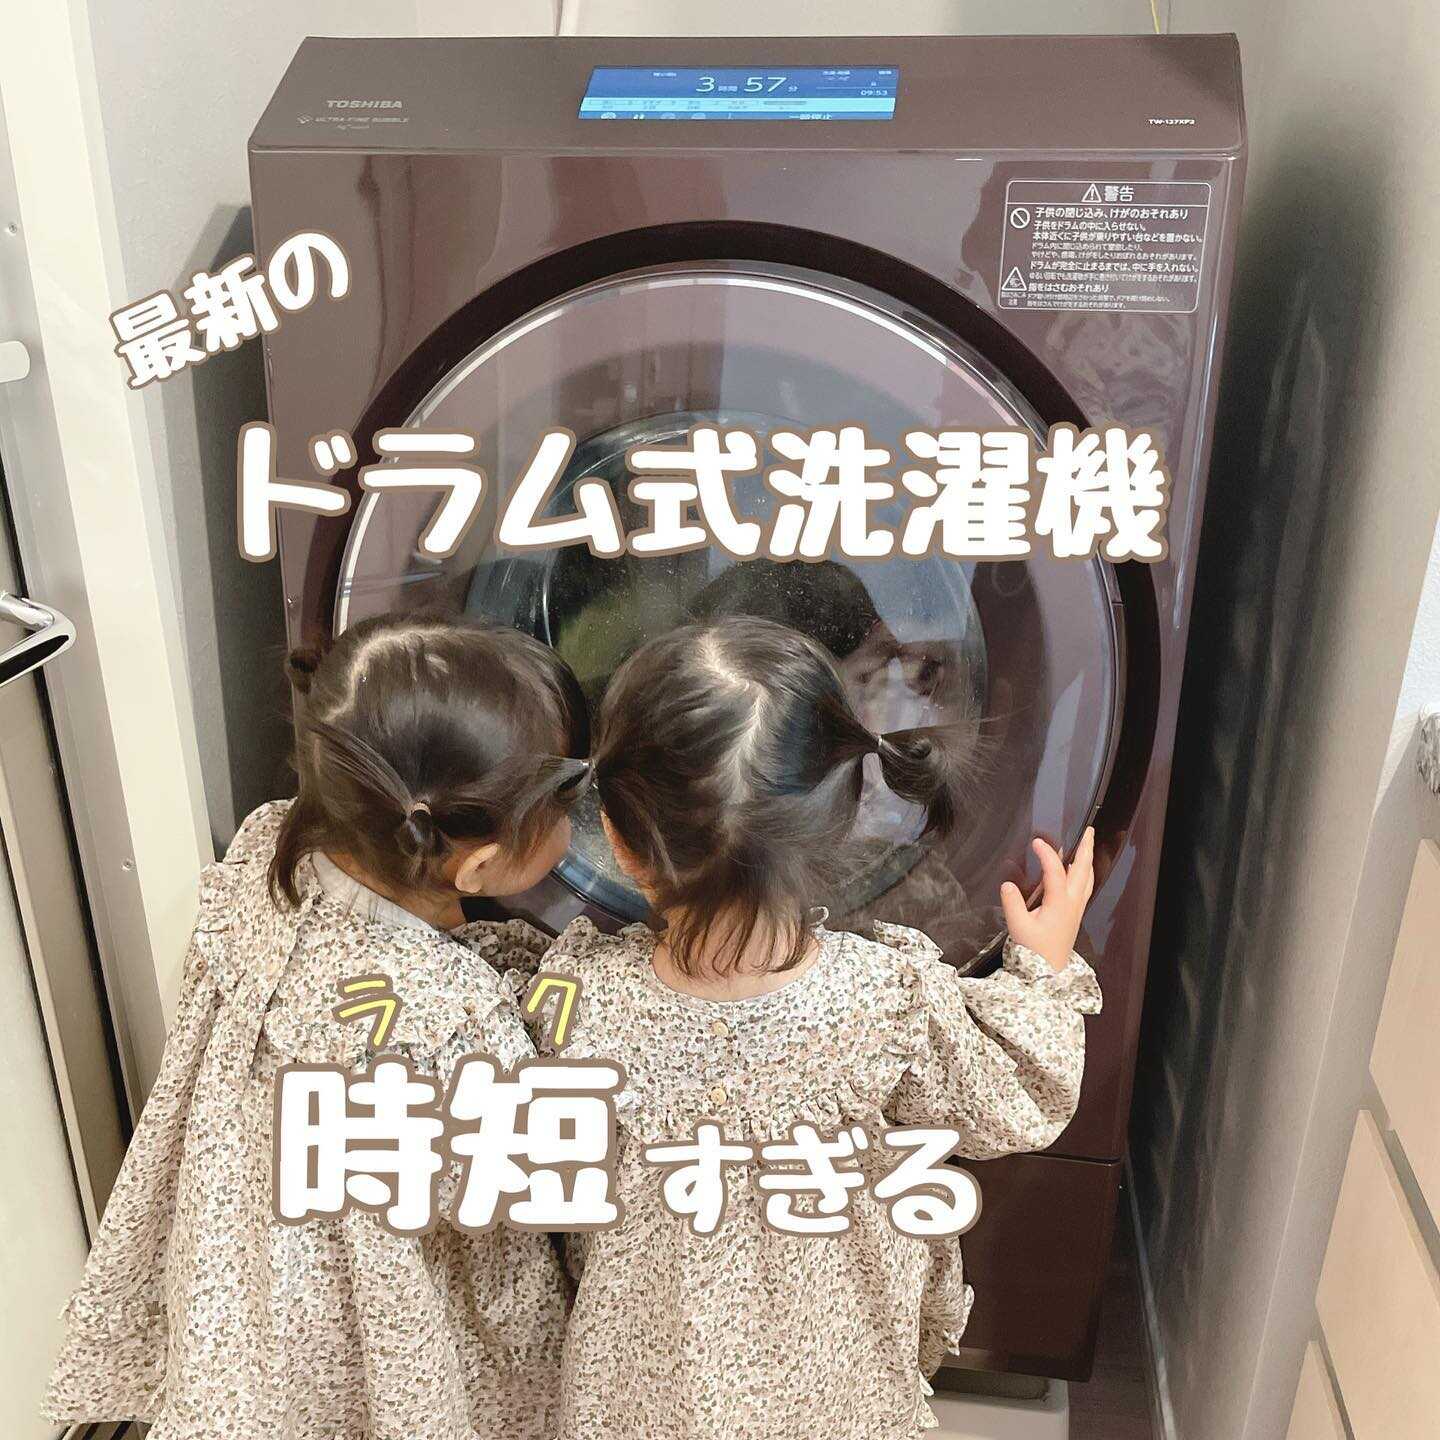 TOSHIBA マジックドラム 洗濯機 - 生活家電